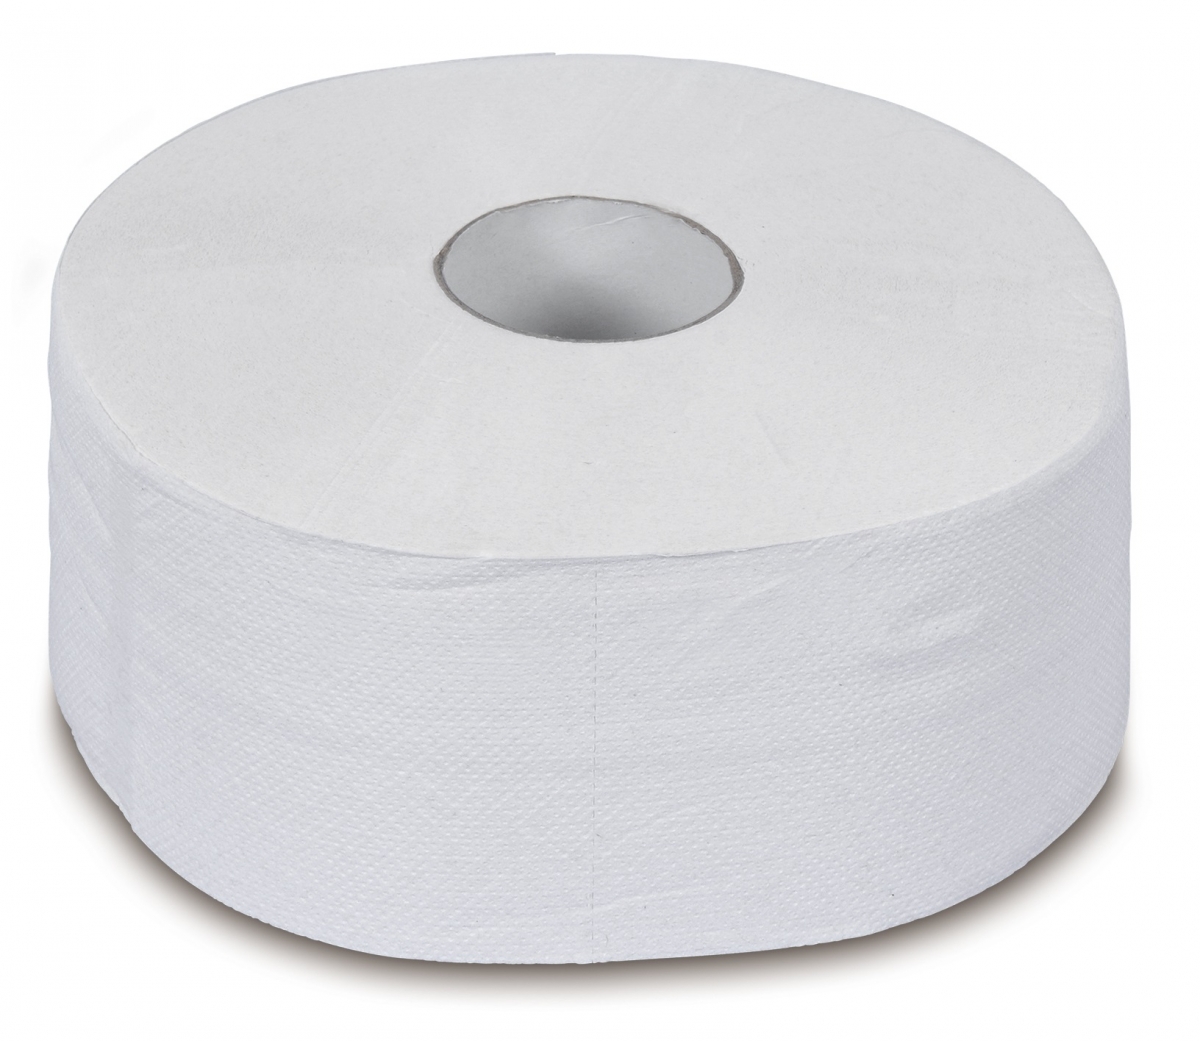 ZVG-ZetGigant-Hygiene, Toilettenpapier, Tissue, 2-lagig, wei, foriert, VE: 6 Ro.